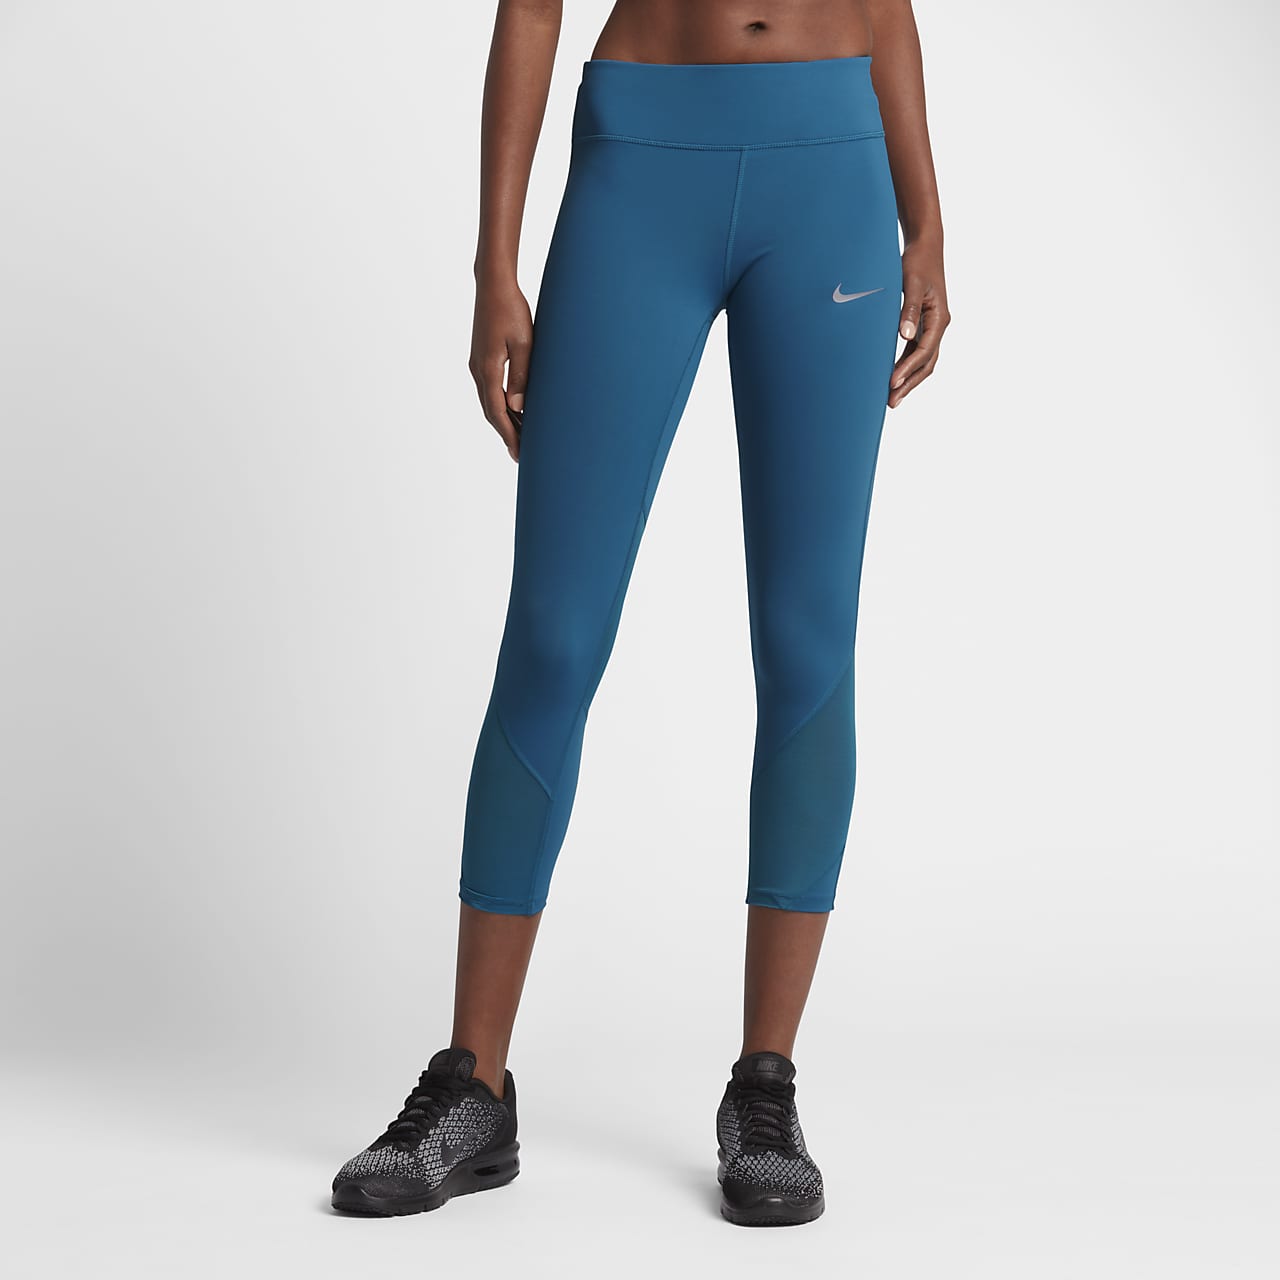 verwerken grillen Missie Nike Epic Lux Women's Running Crops. Nike ID